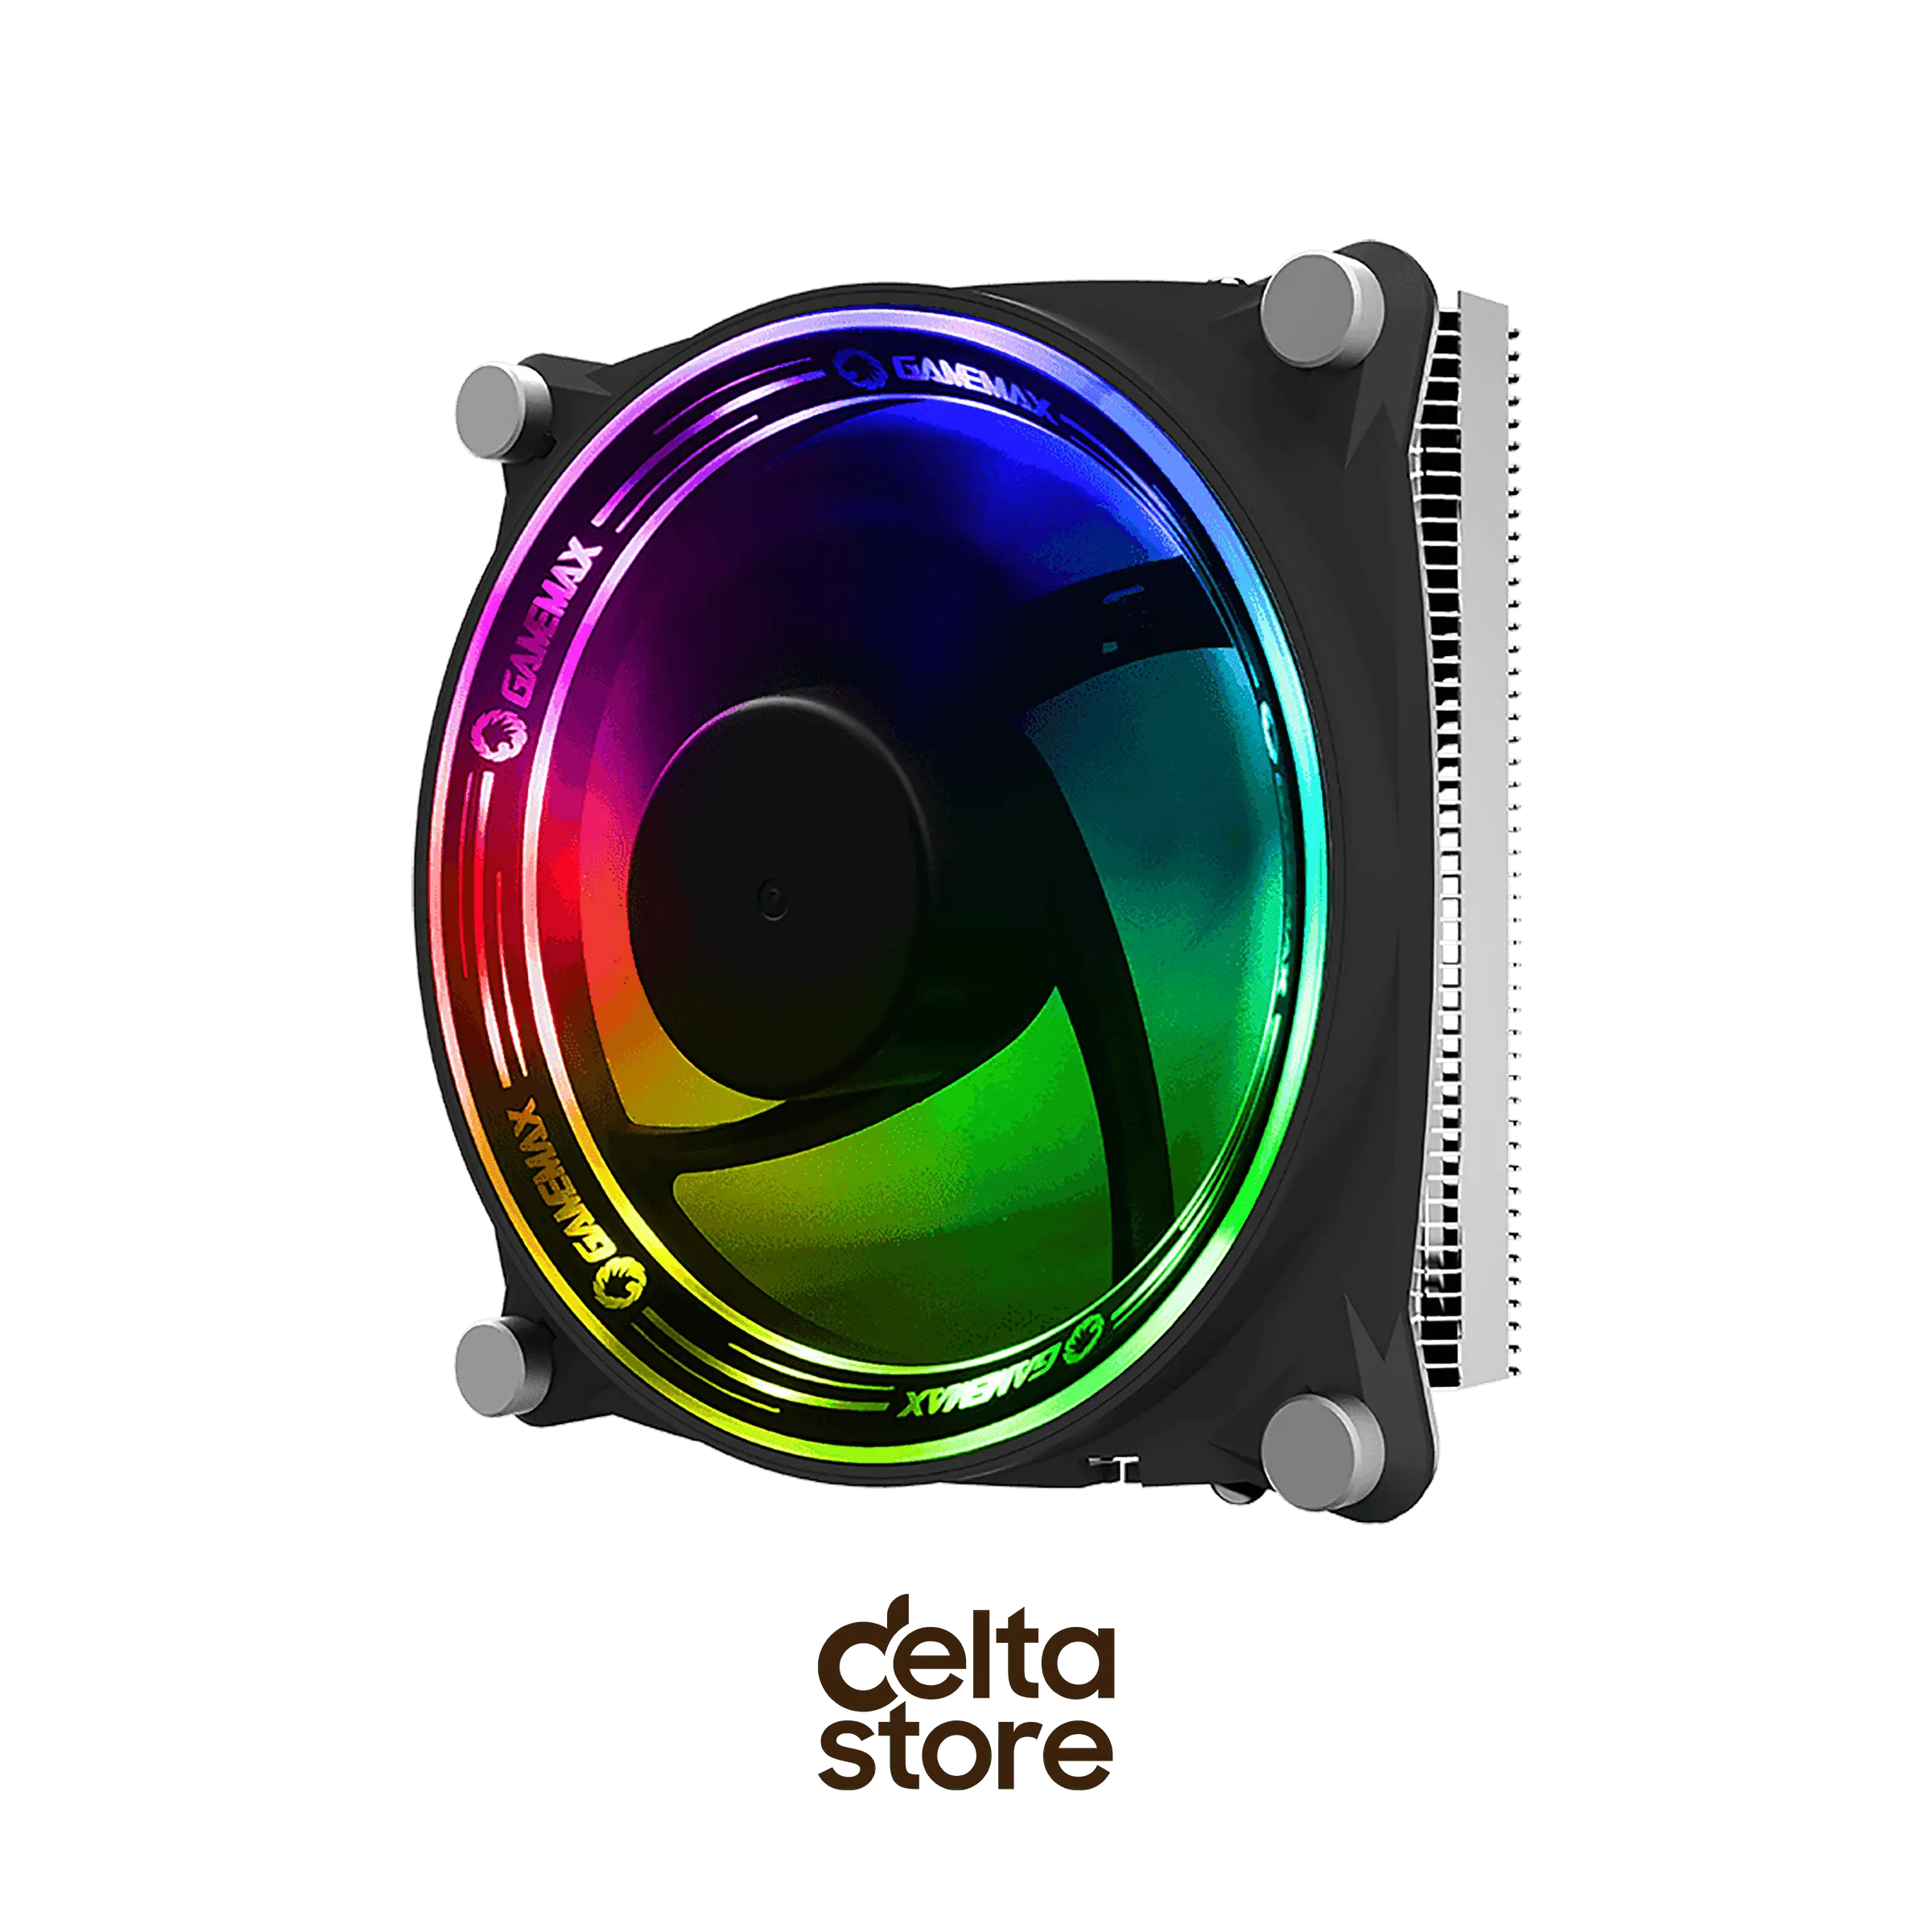 Gamemax Gamma 300 Rainbow CPU Cooler